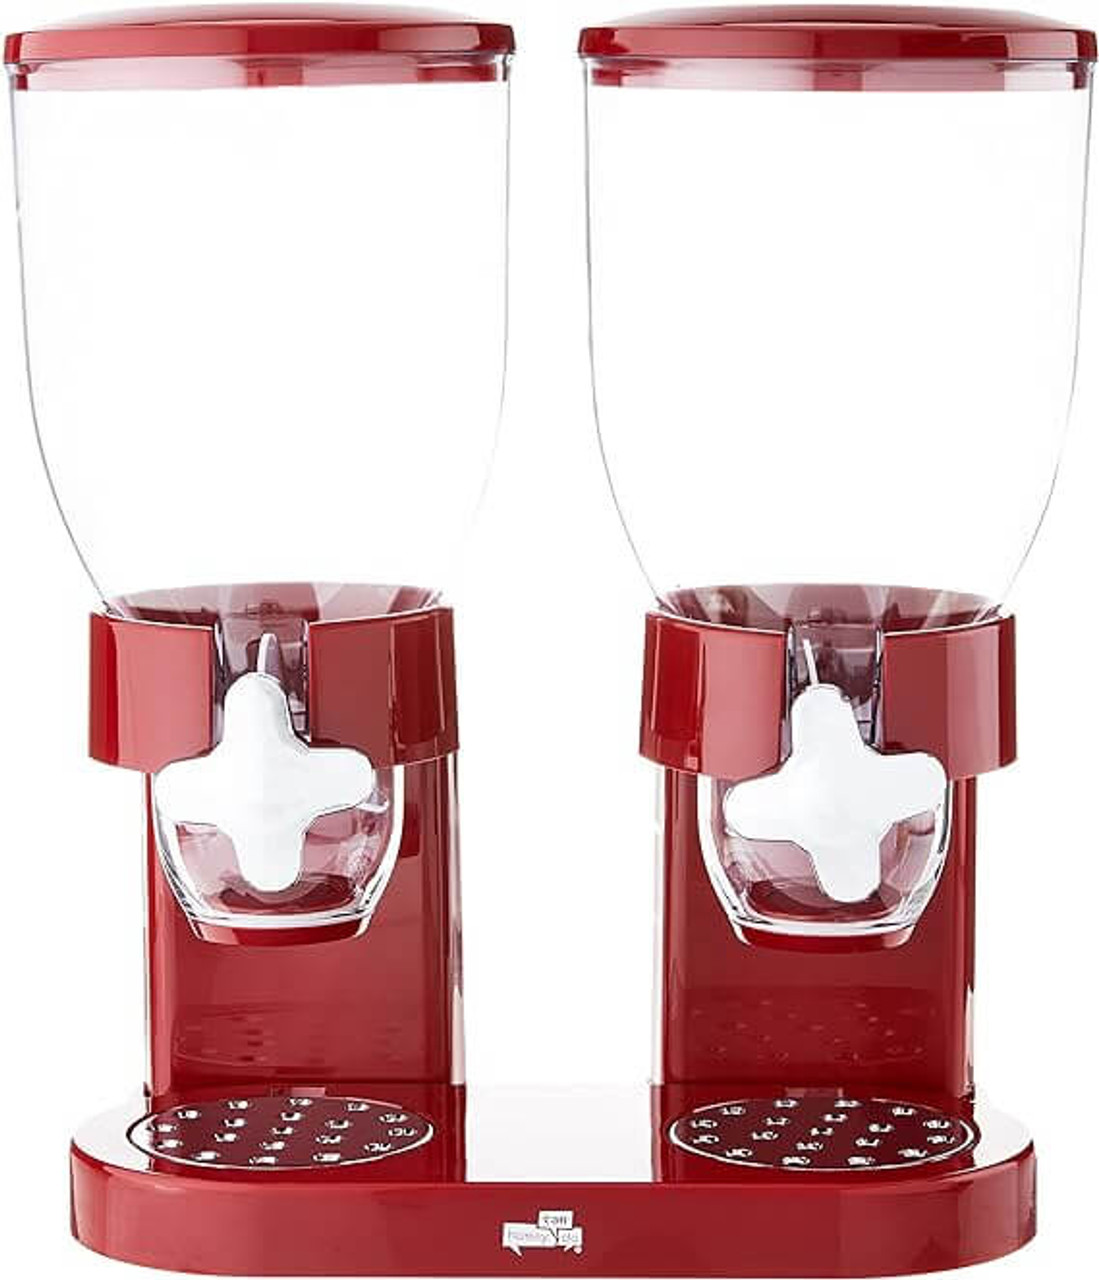 Zevro KCH Red 4 Liter Double Canister Dry Food Dispenser - Freshness Preserved